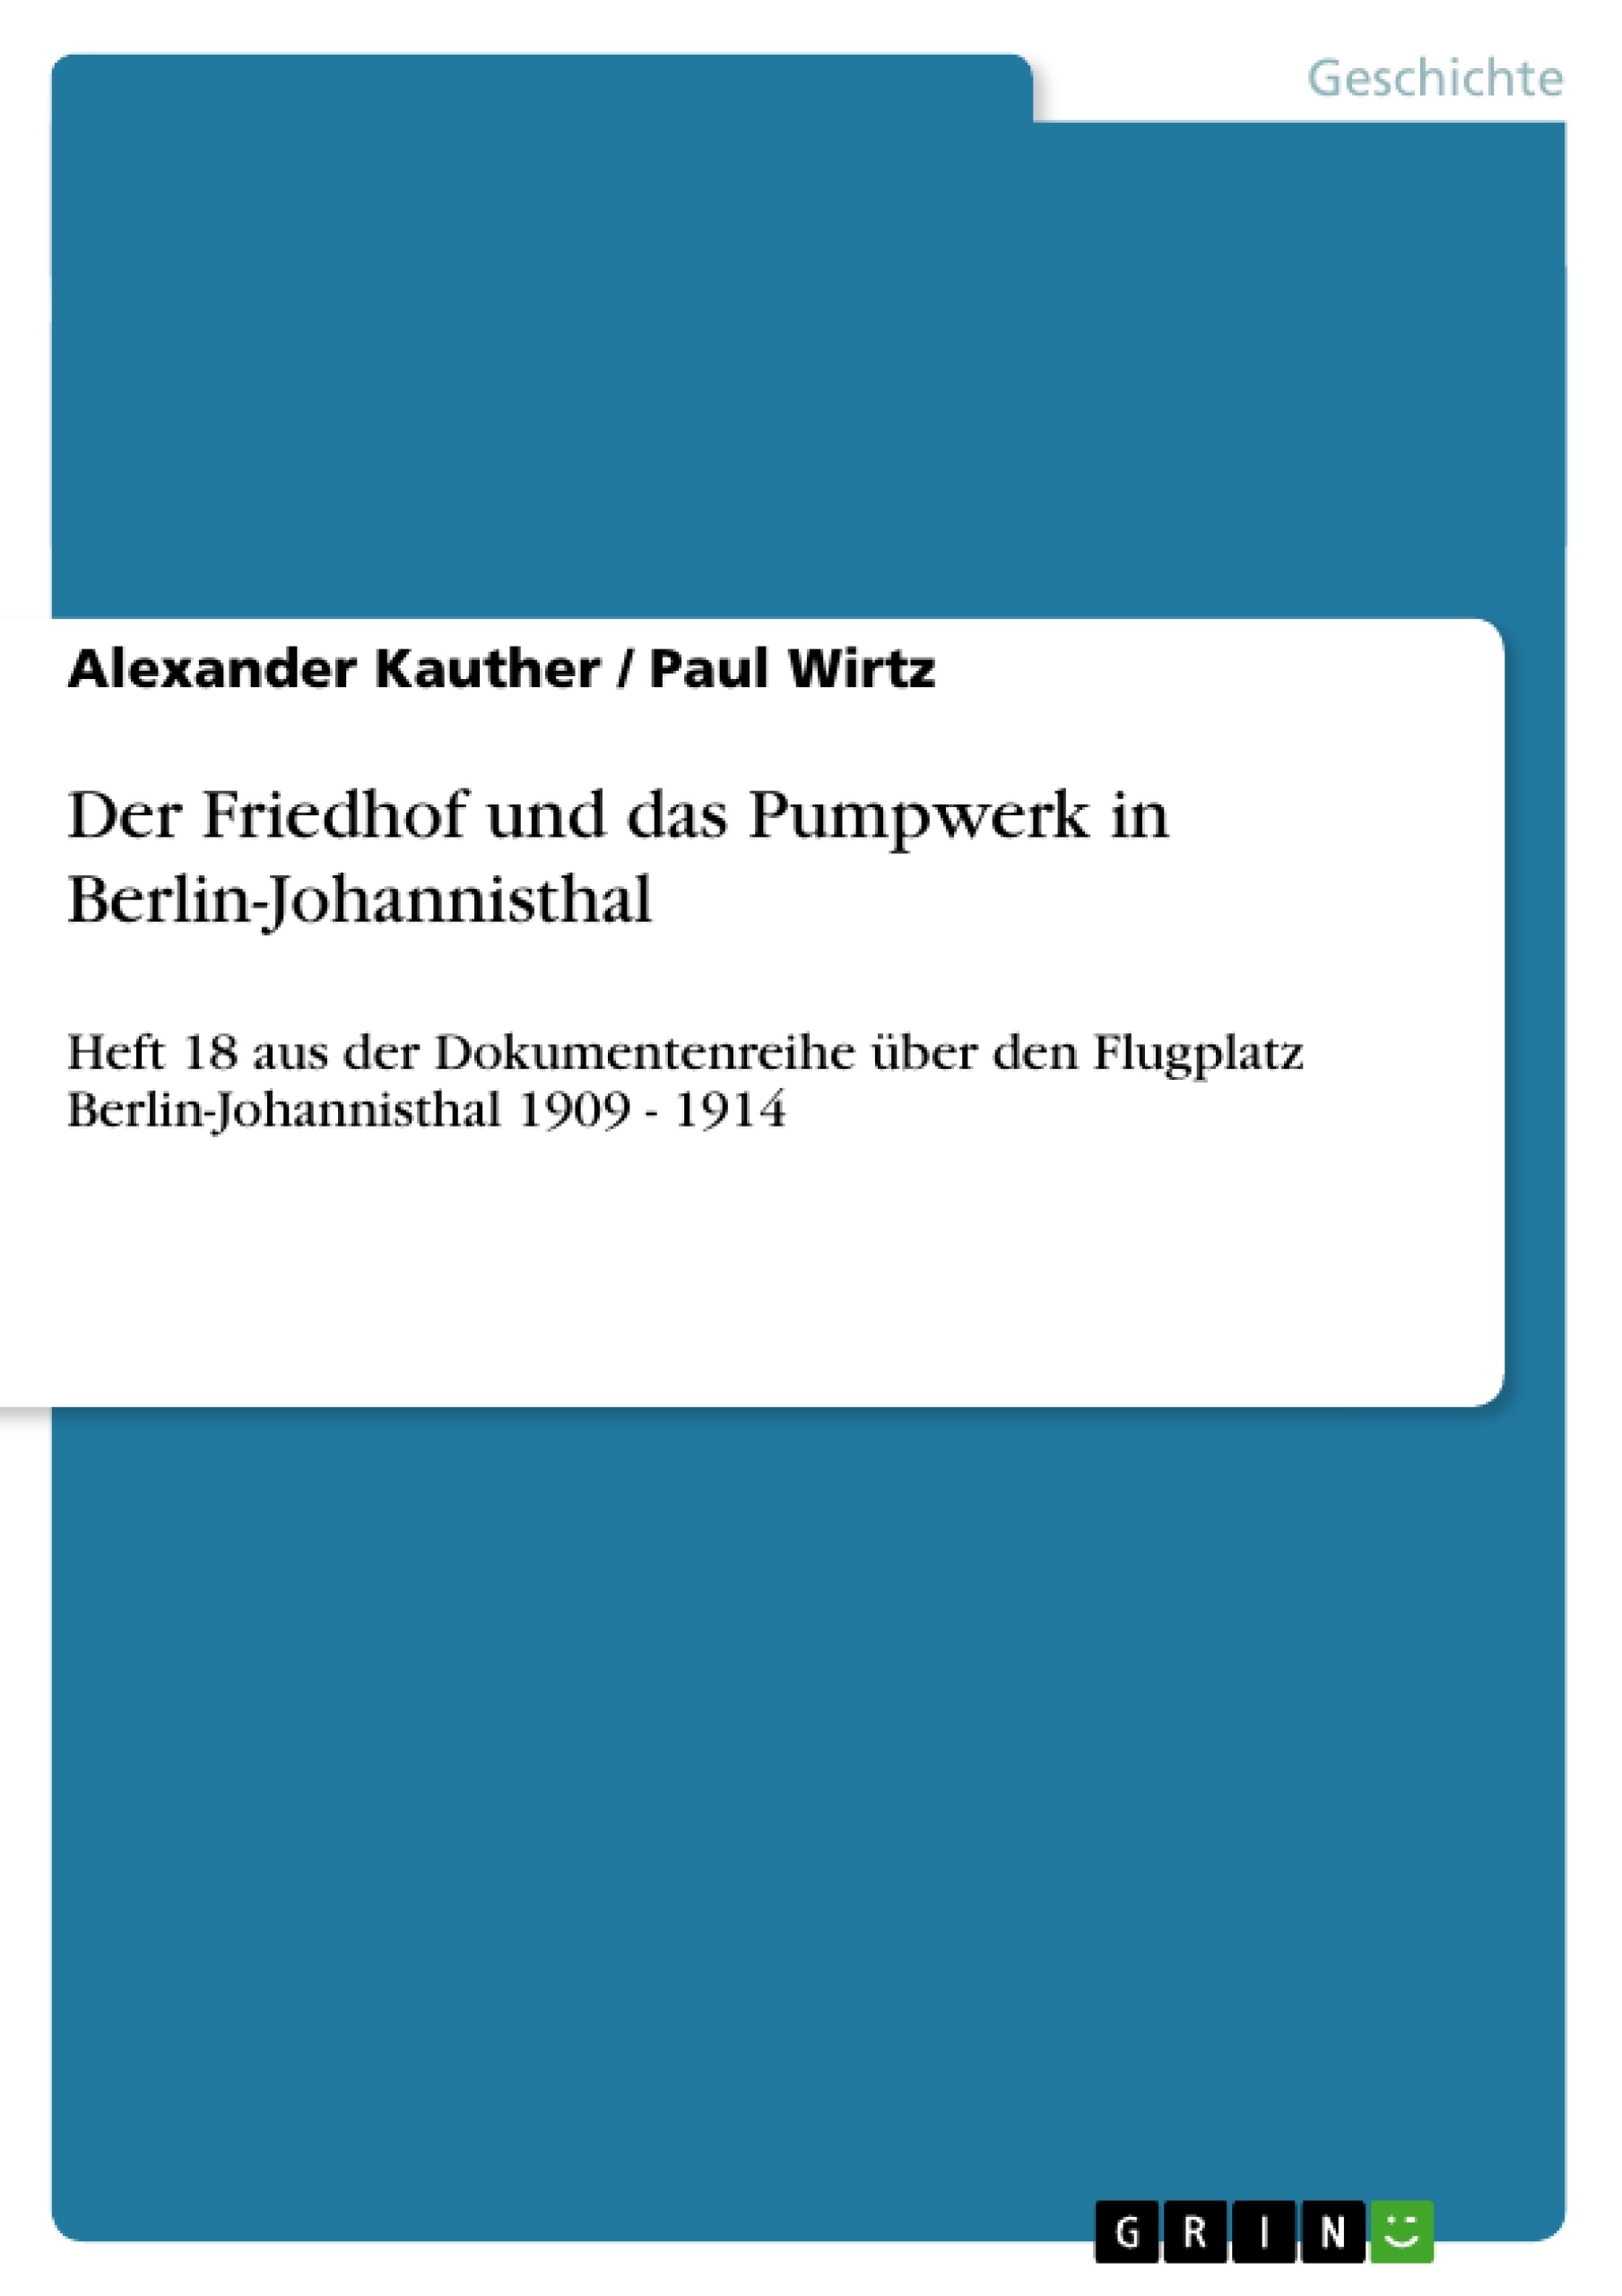 Titre: Der Friedhof und das Pumpwerk in Berlin-Johannisthal